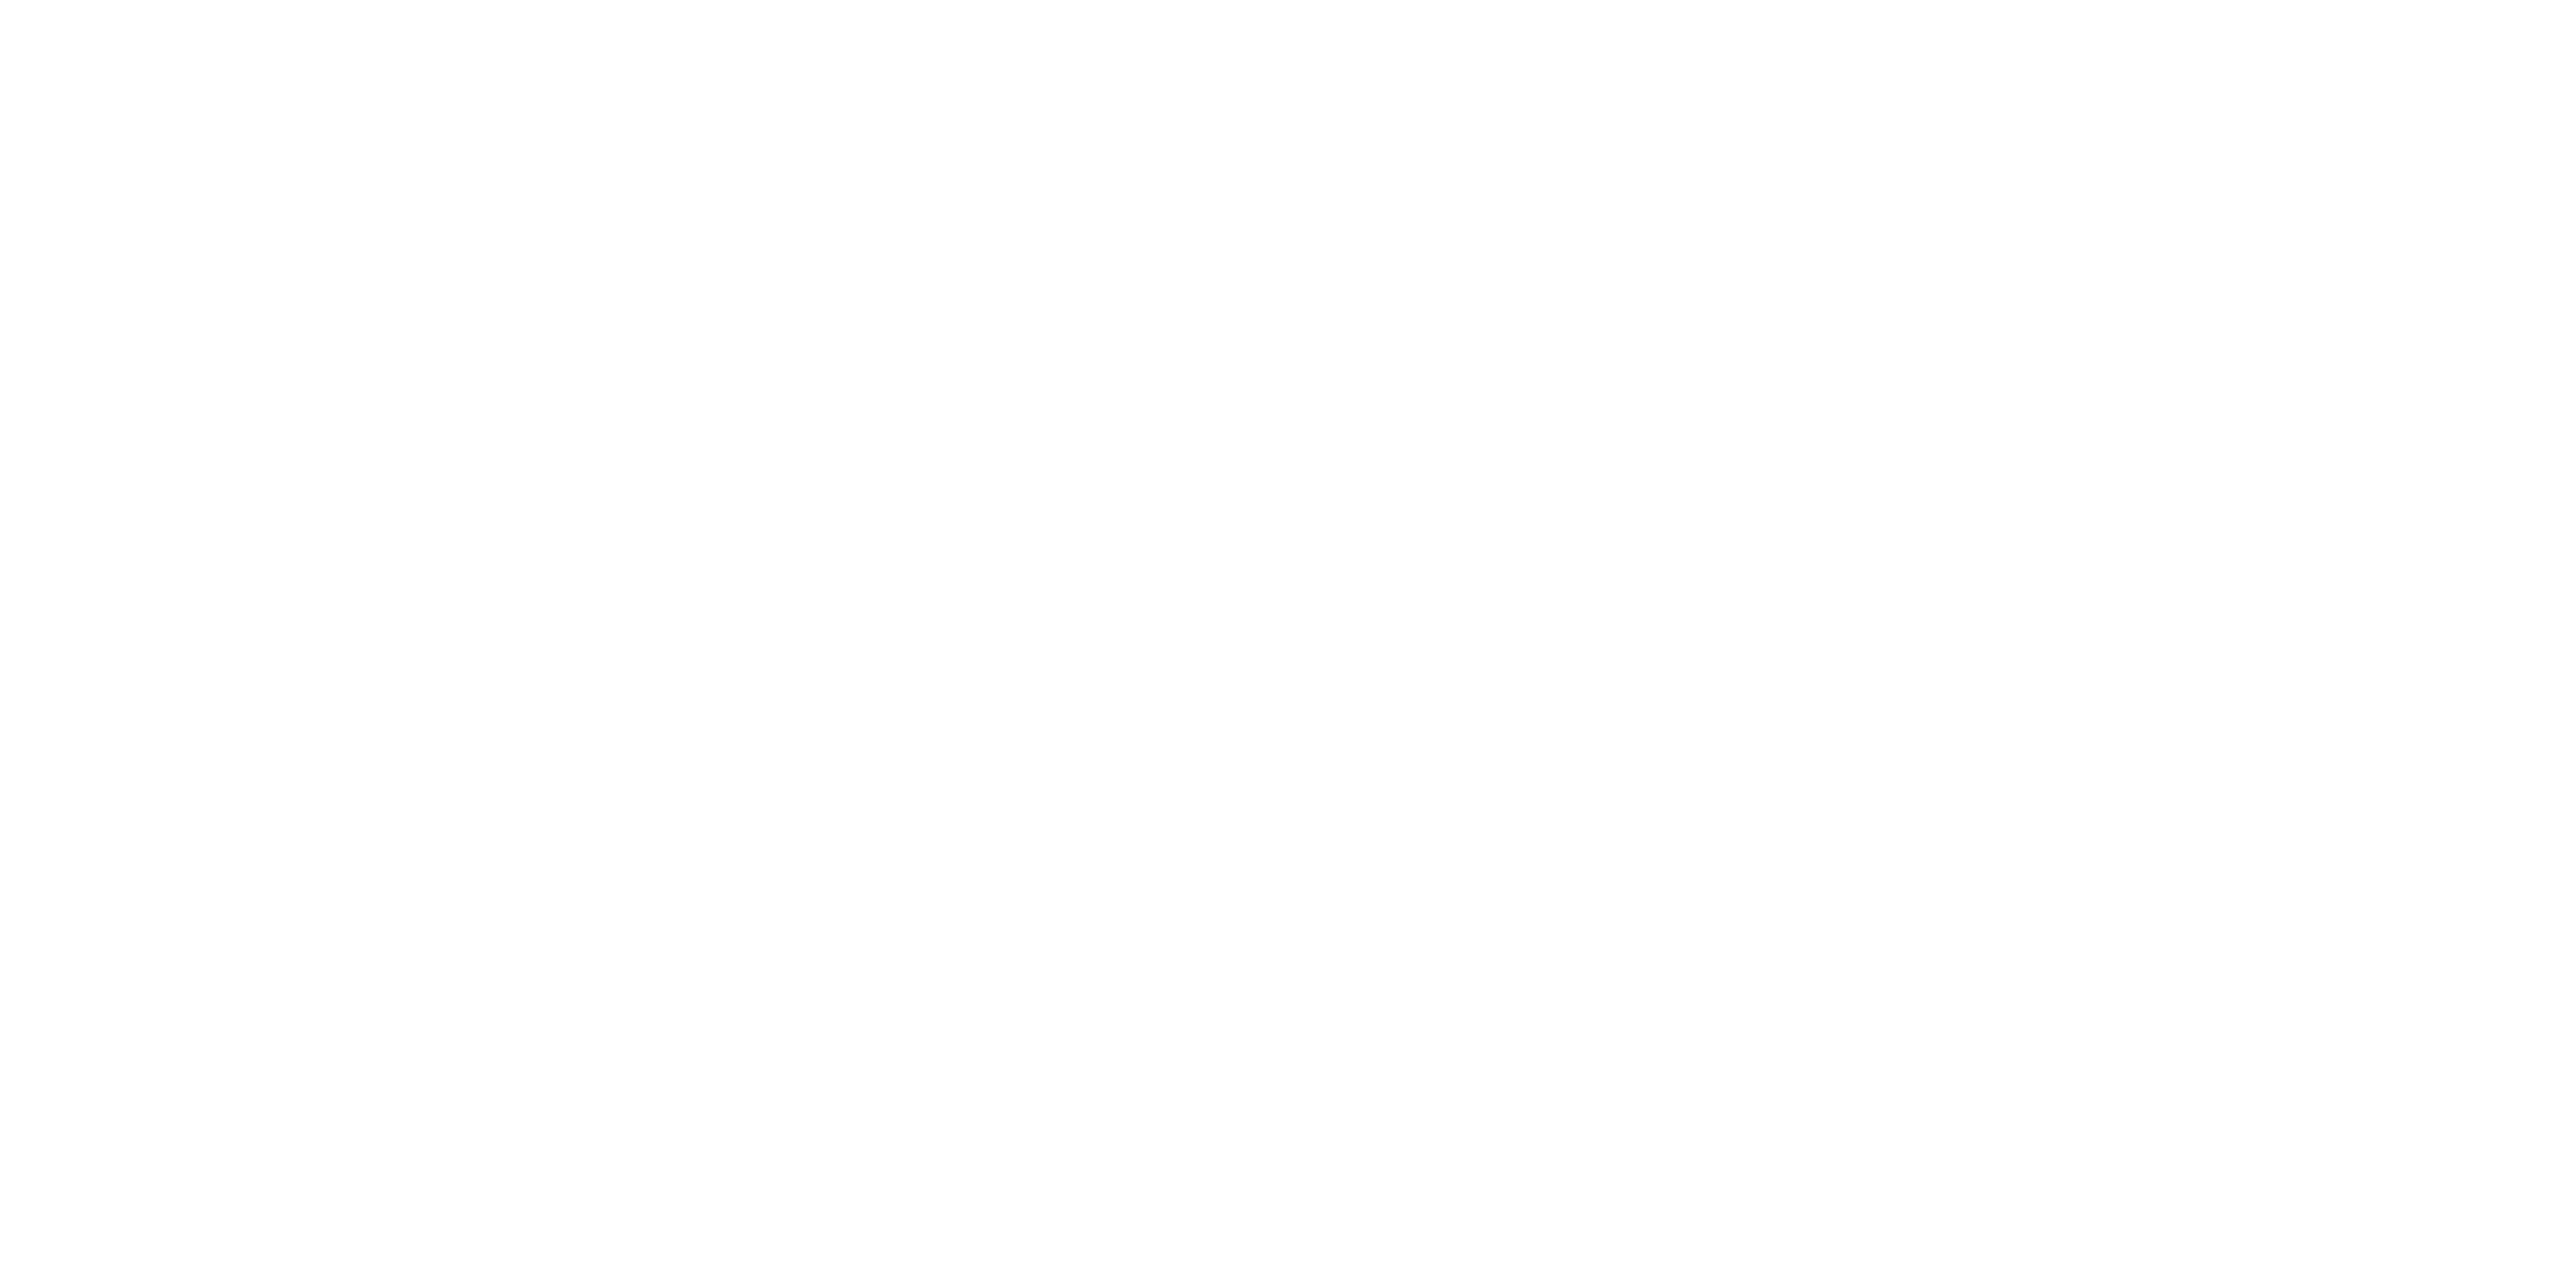 Stranix Capital